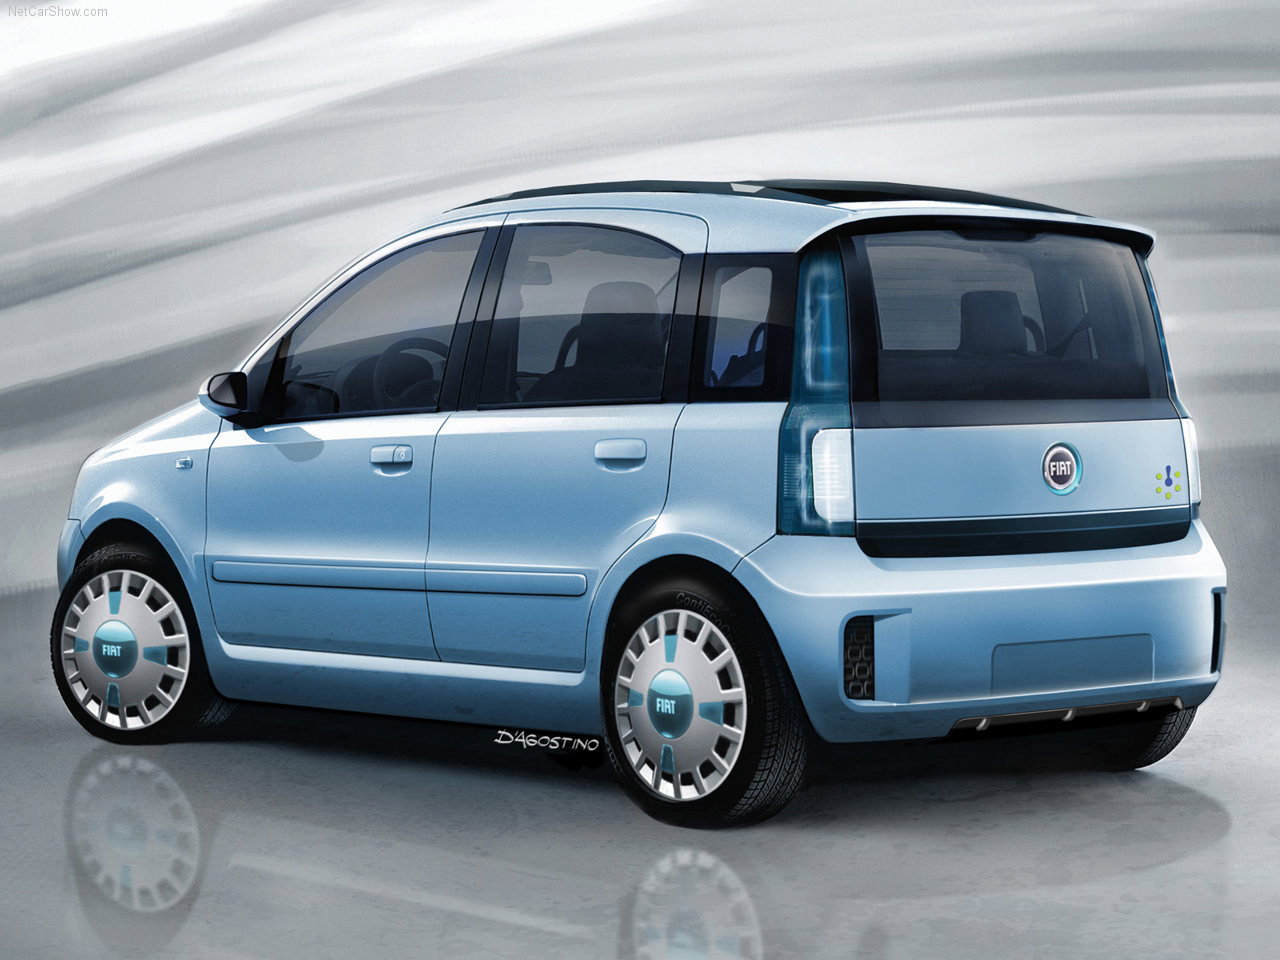 Fiat-Panda_Multi_Eco_Concept-2006-1280-02